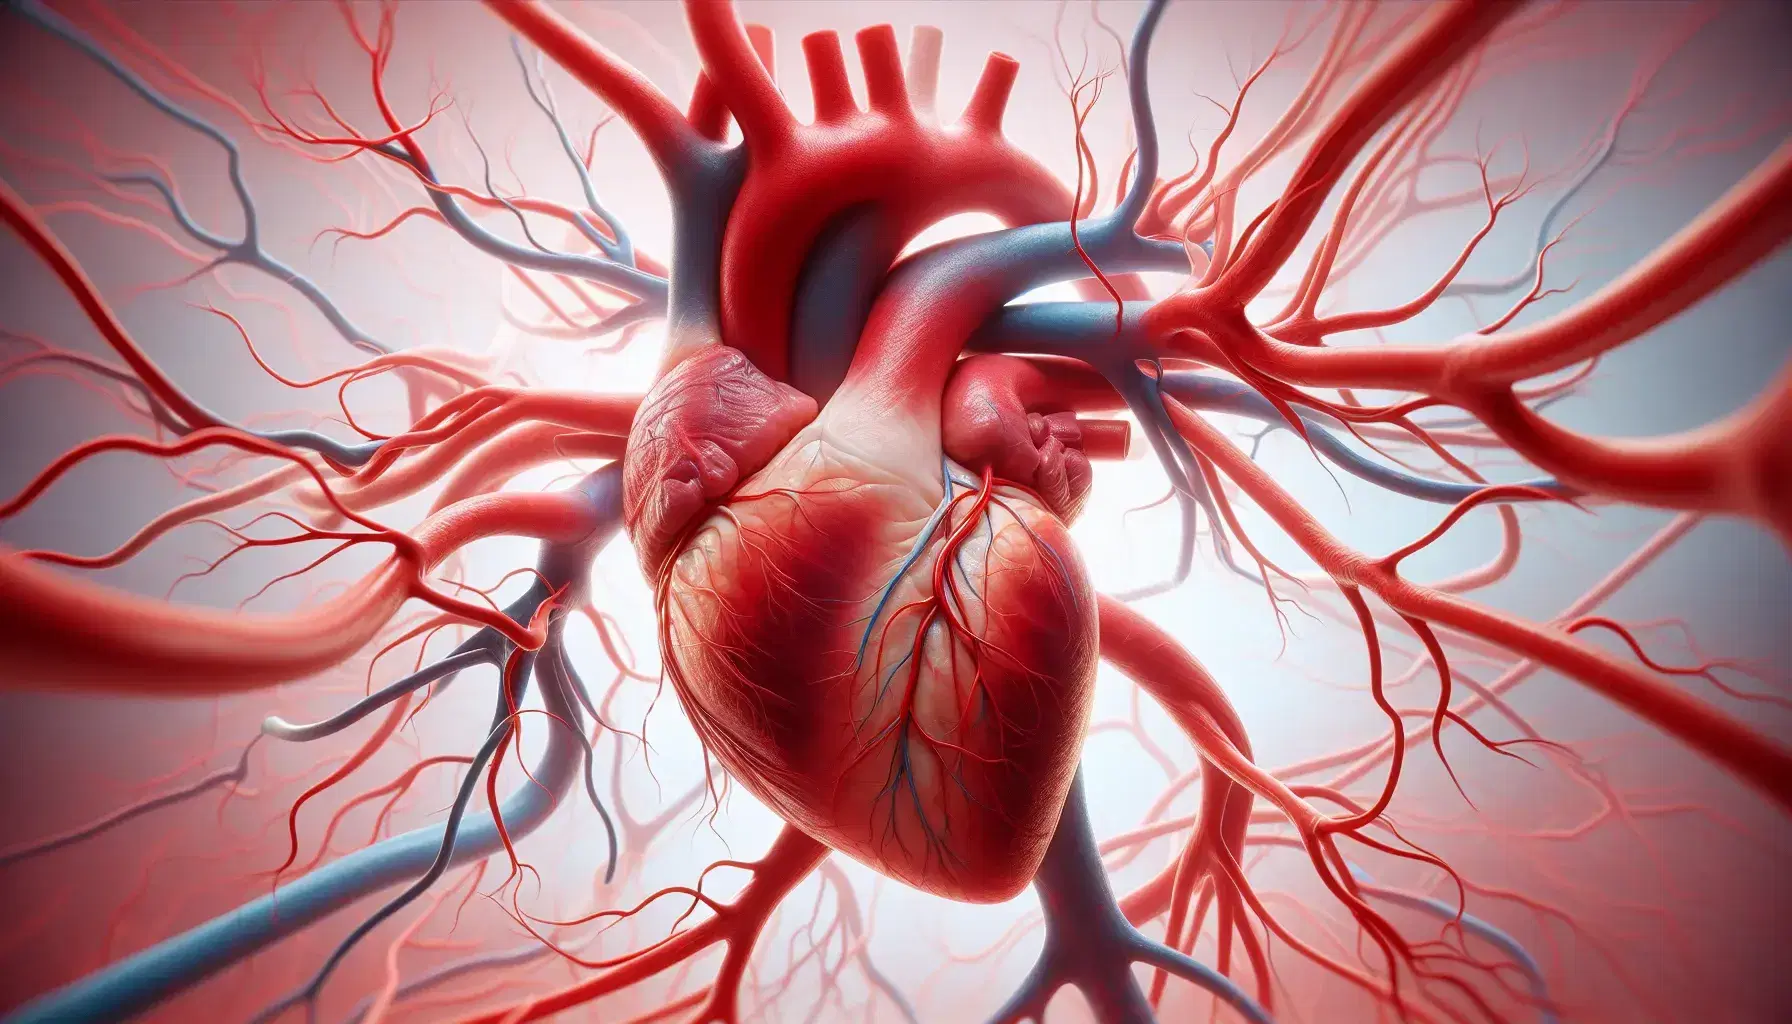 Corazón humano realista rodeado de red de vasos sanguíneos en tonos rojos y azules sobre fondo suave, mostrando detalles anatómicos precisos.